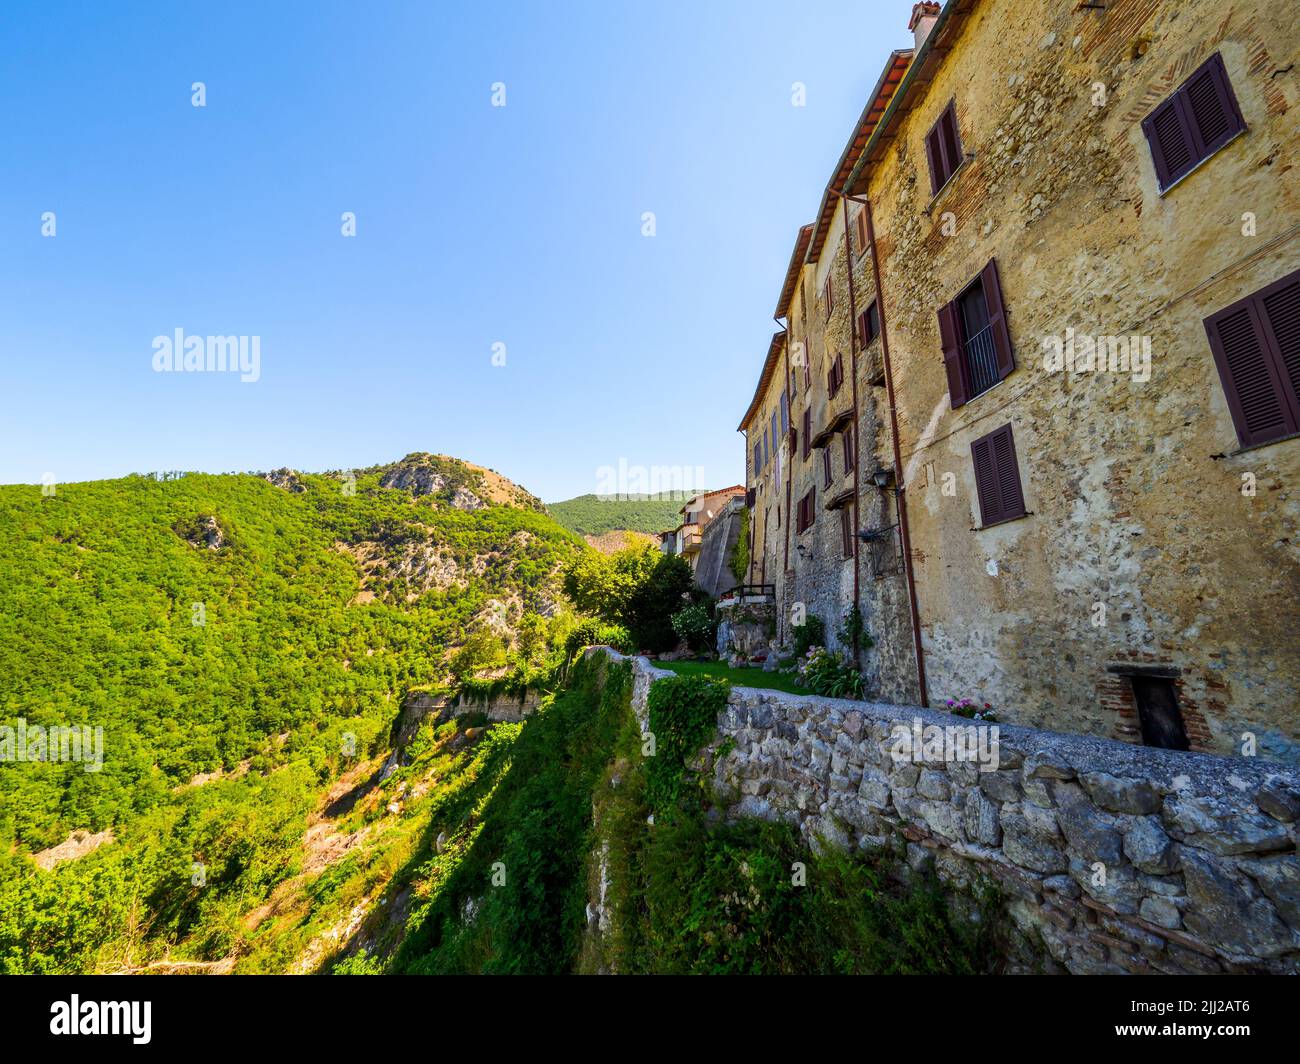 Ville médiévale de Rocca Sinibalda - Rieti, Italie Banque D'Images